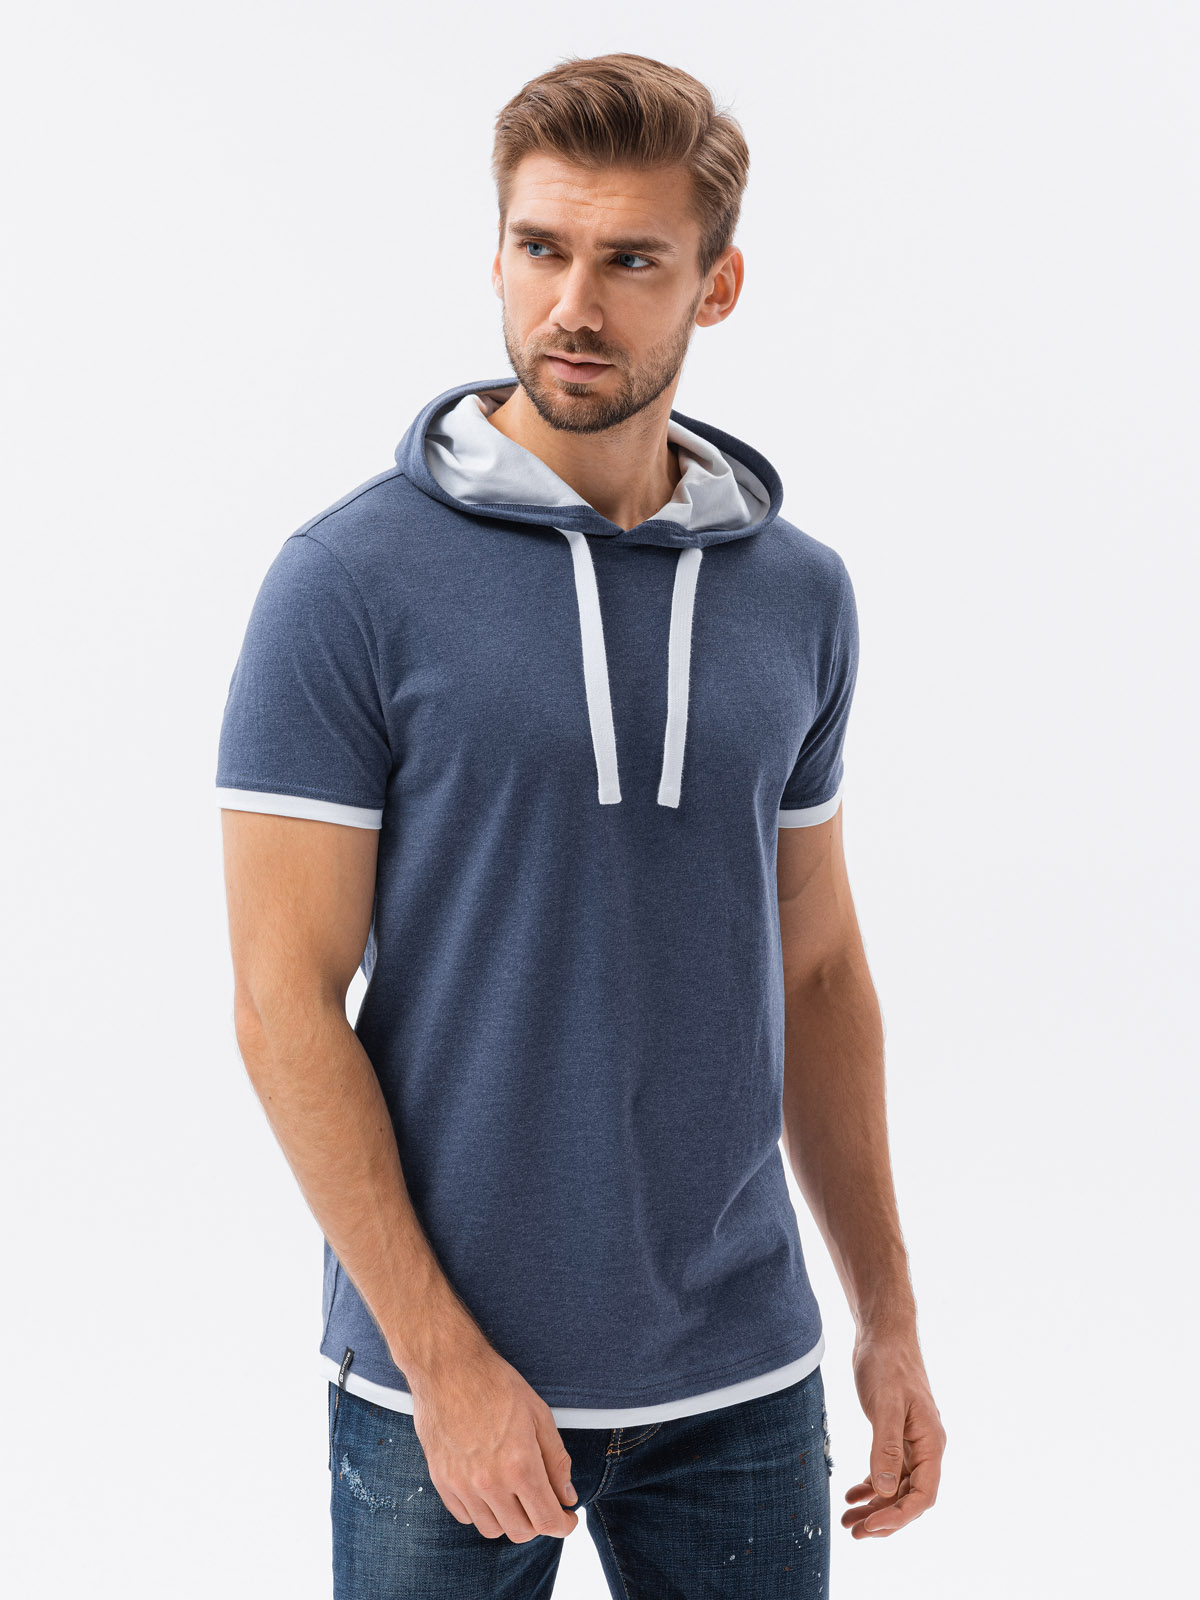 Men's plain hooded t-shirt - grey melange S1376